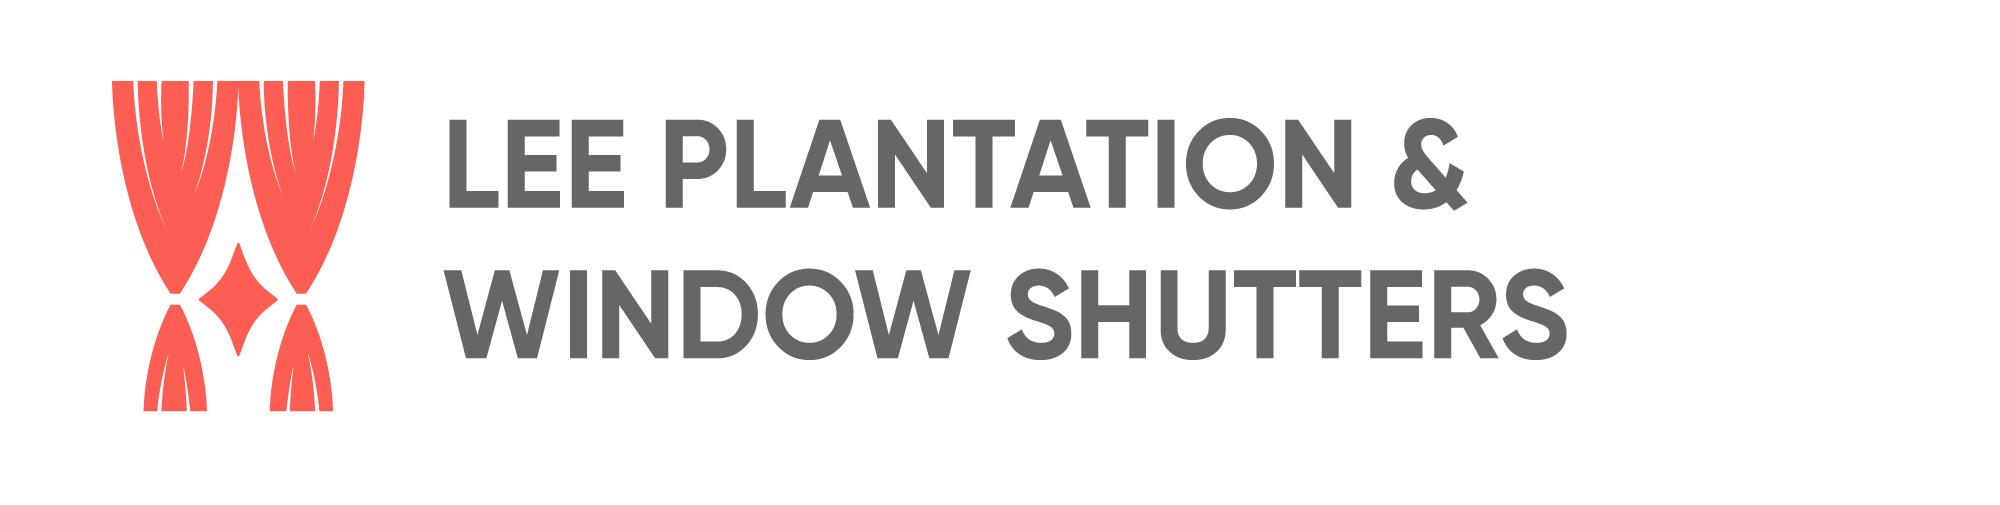 Lee Plantation & Window Shutters